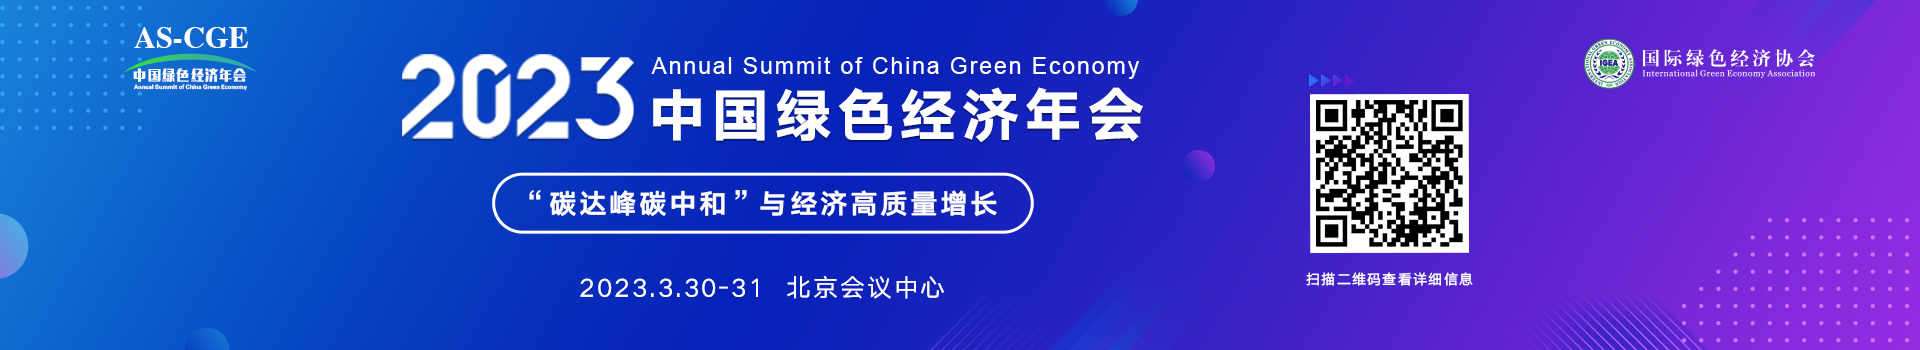 2023中国绿色经济年会